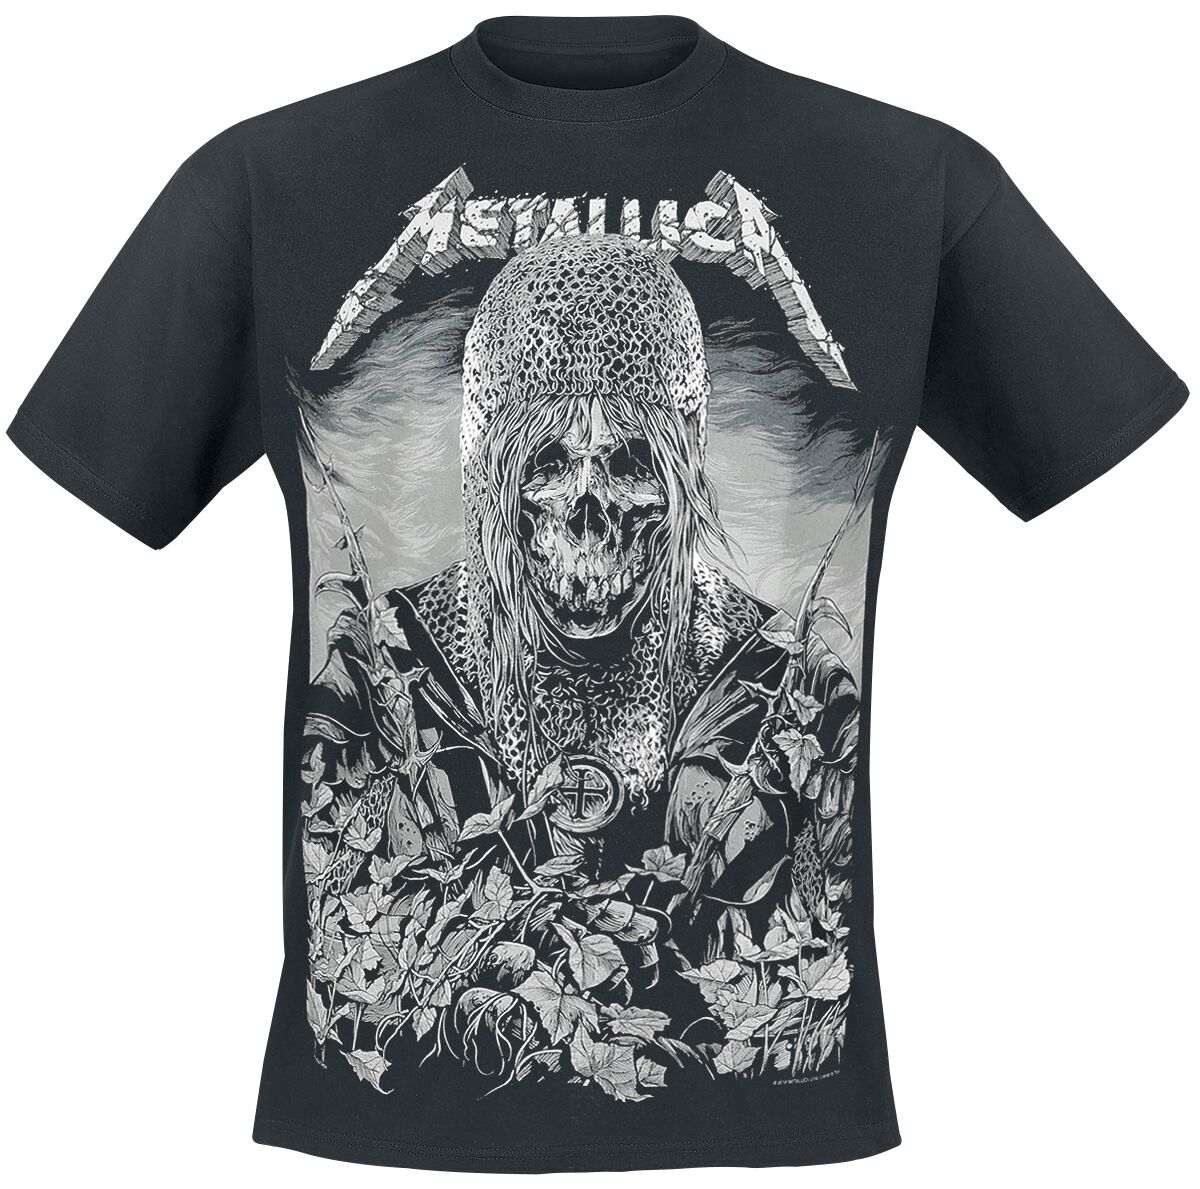 Metallica T-Shirt - Templar - S bis 3XL - für Männer - Größe L - schwarz  - Lizenziertes Merchandise!